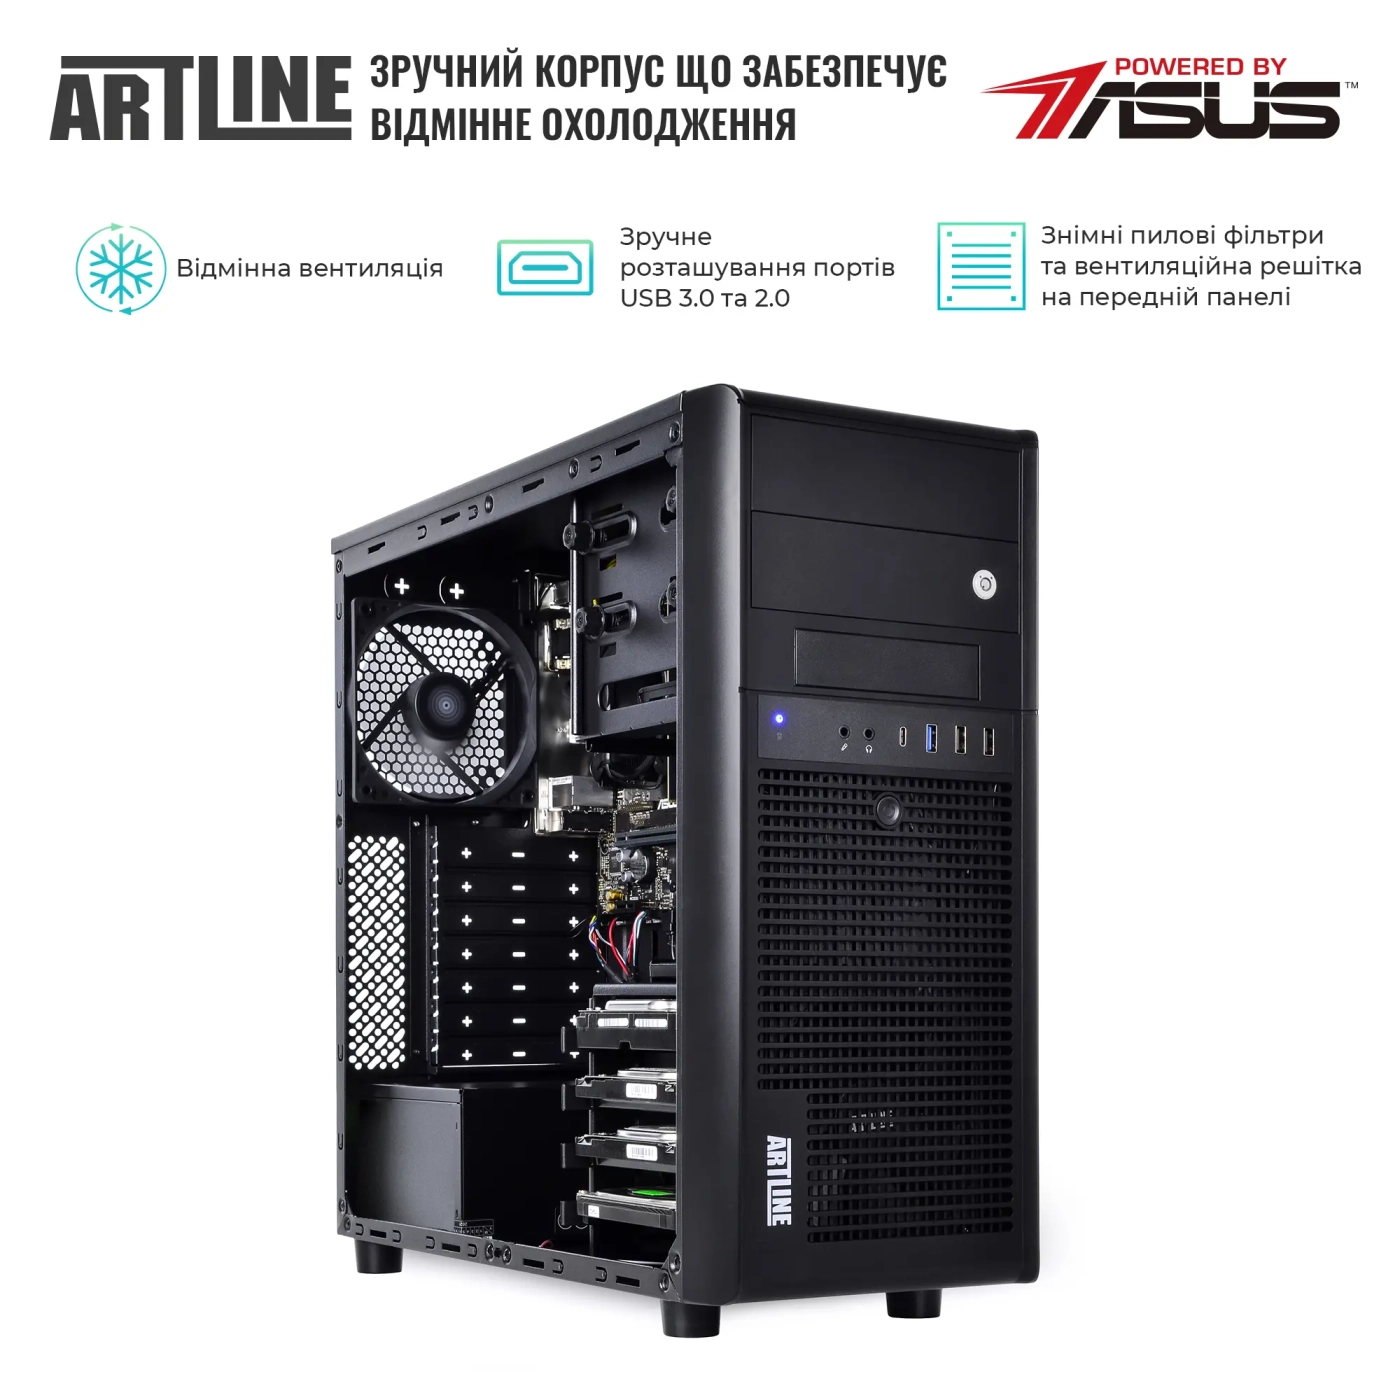 Купить Сервер ARTLINE Business T34 (T34v15) - фото 3